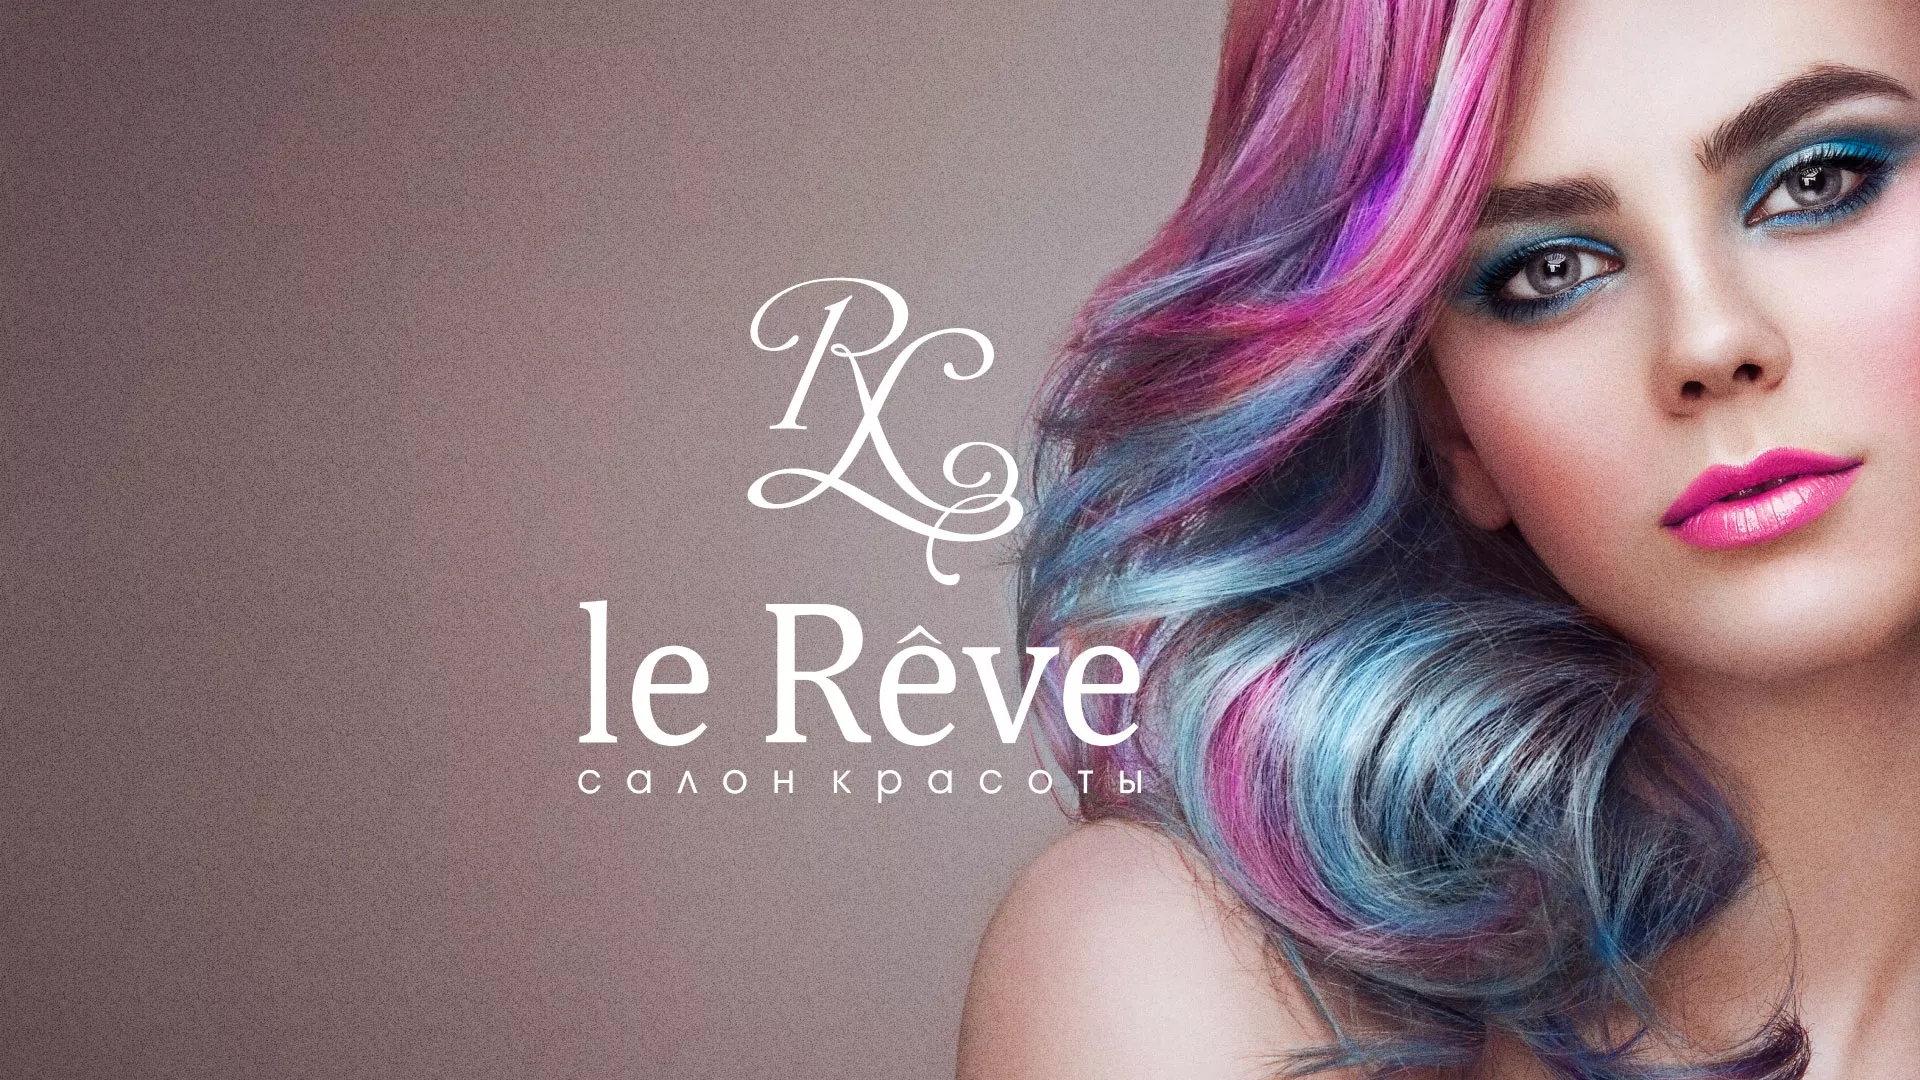 Создание сайта для салона красоты «Le Reve» в Заполярном